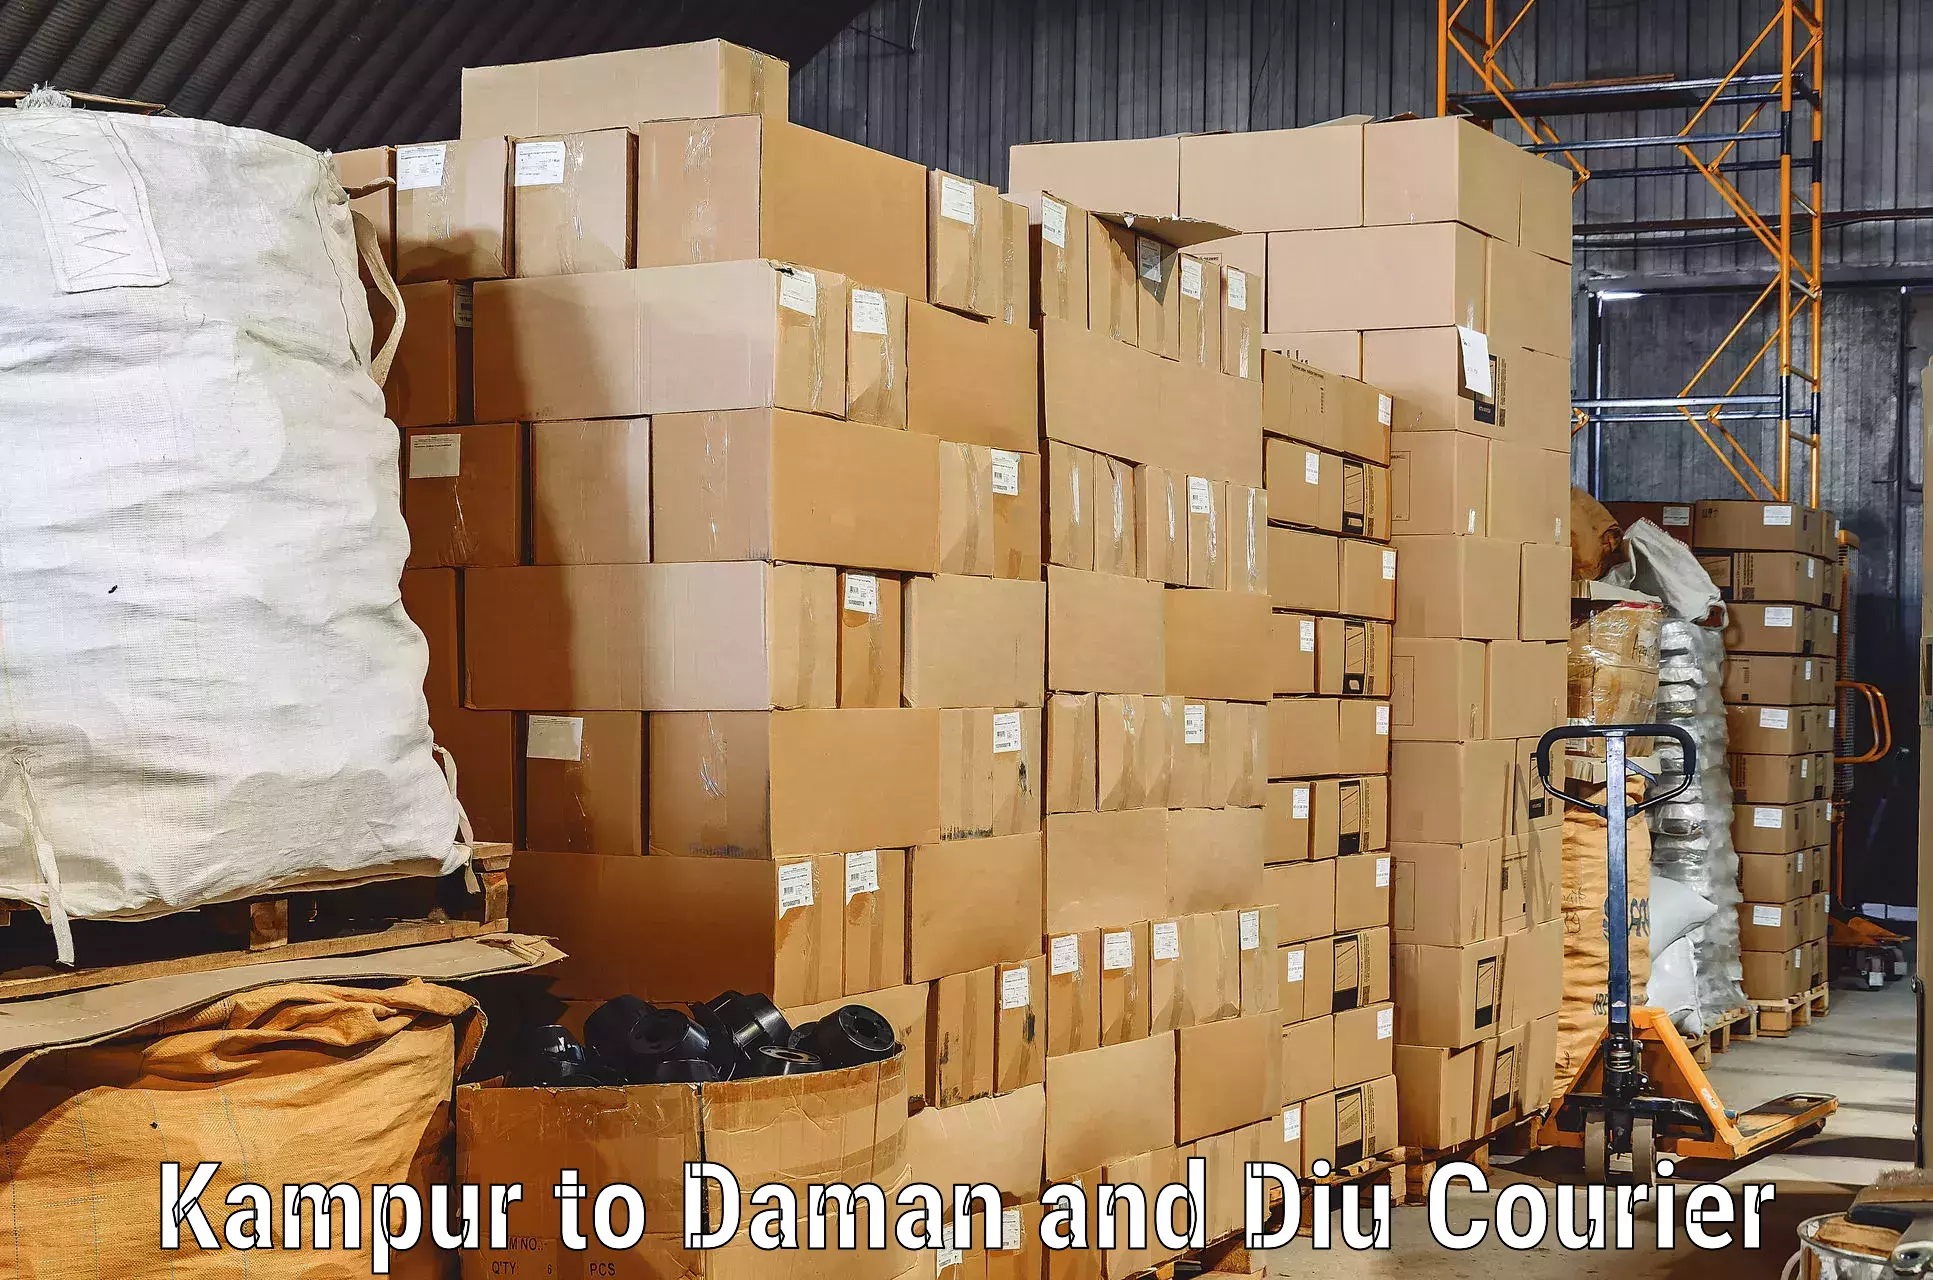 Furniture transport experts Kampur to Daman and Diu